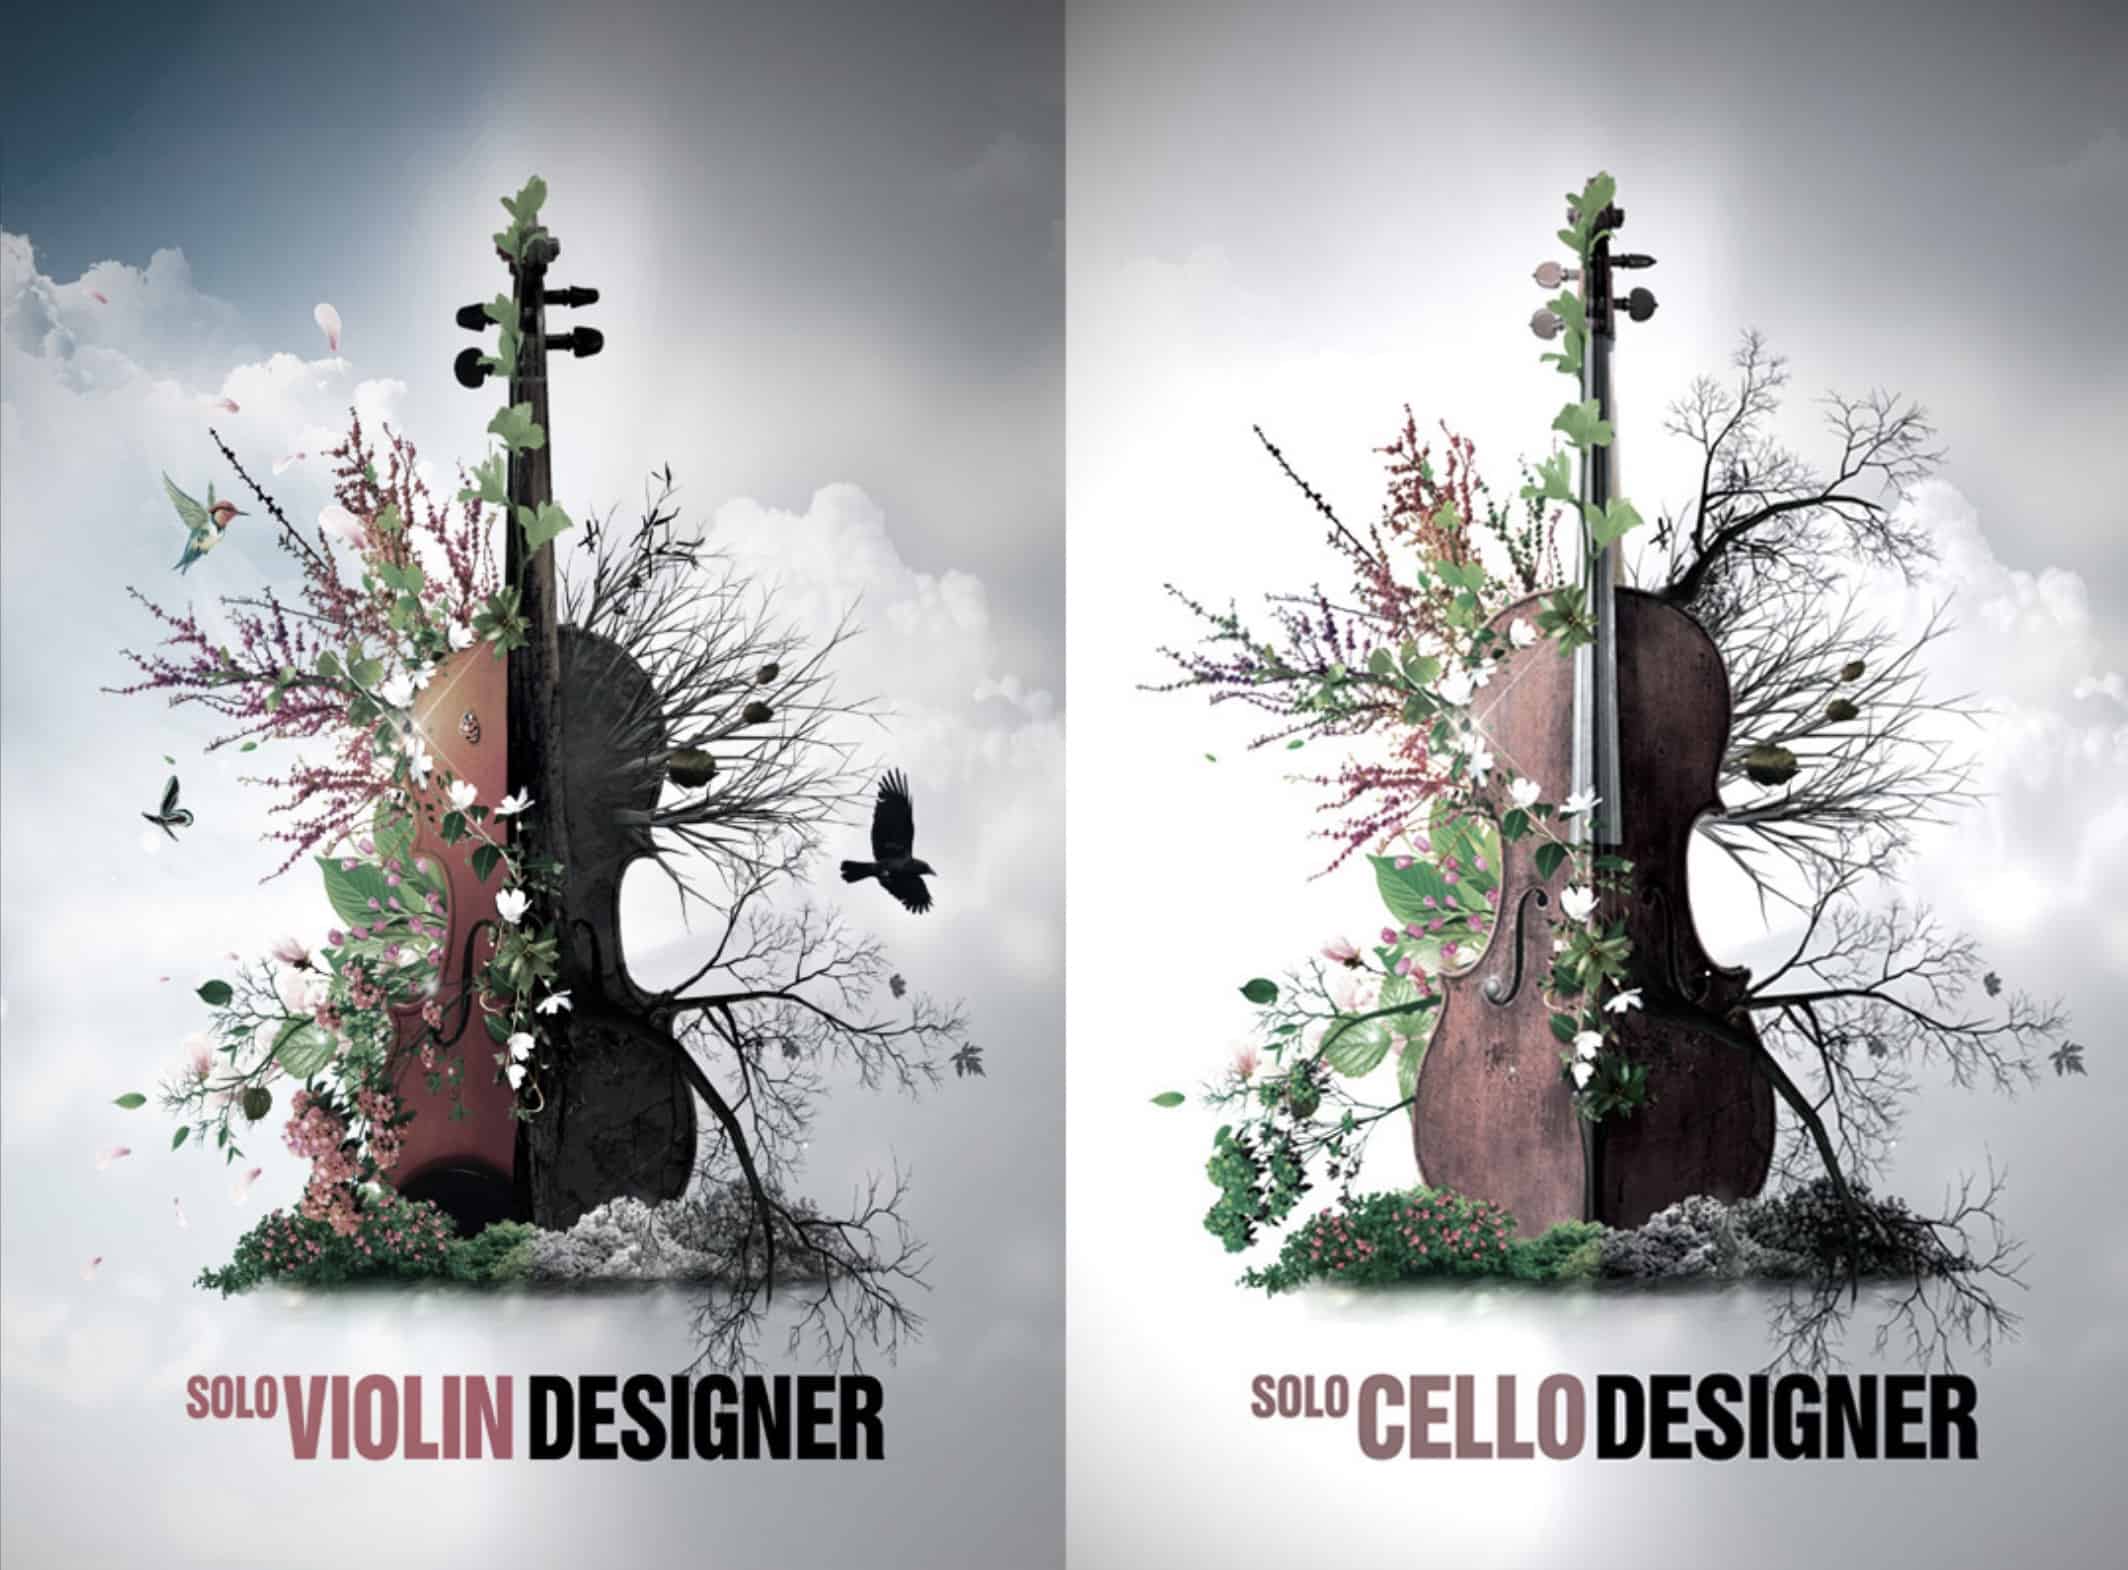 8Dio’s Solo Violin & Solo Cello Designer $38 each (normally $198)